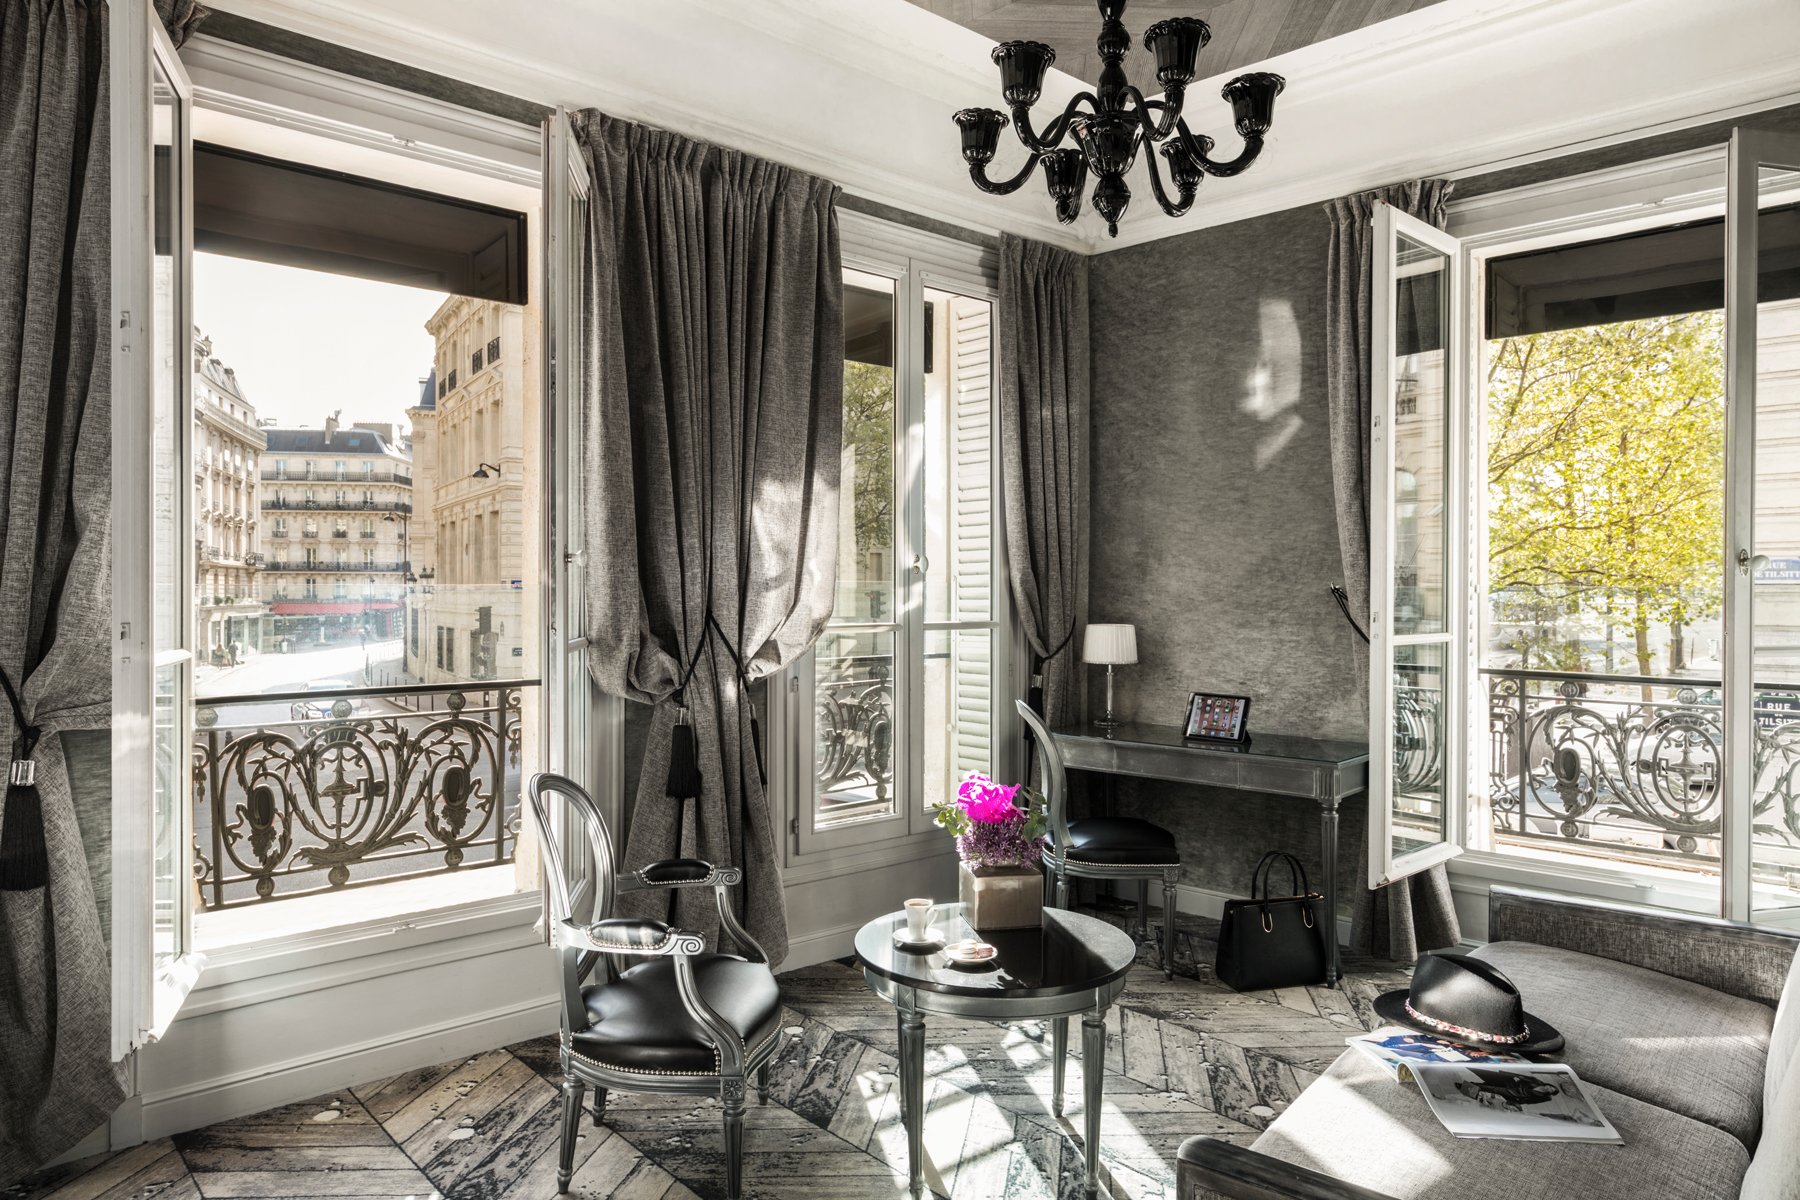 Maison Albar Hotels Le Champs-Elysées Junior Suite with a view on the arc de Triomphe